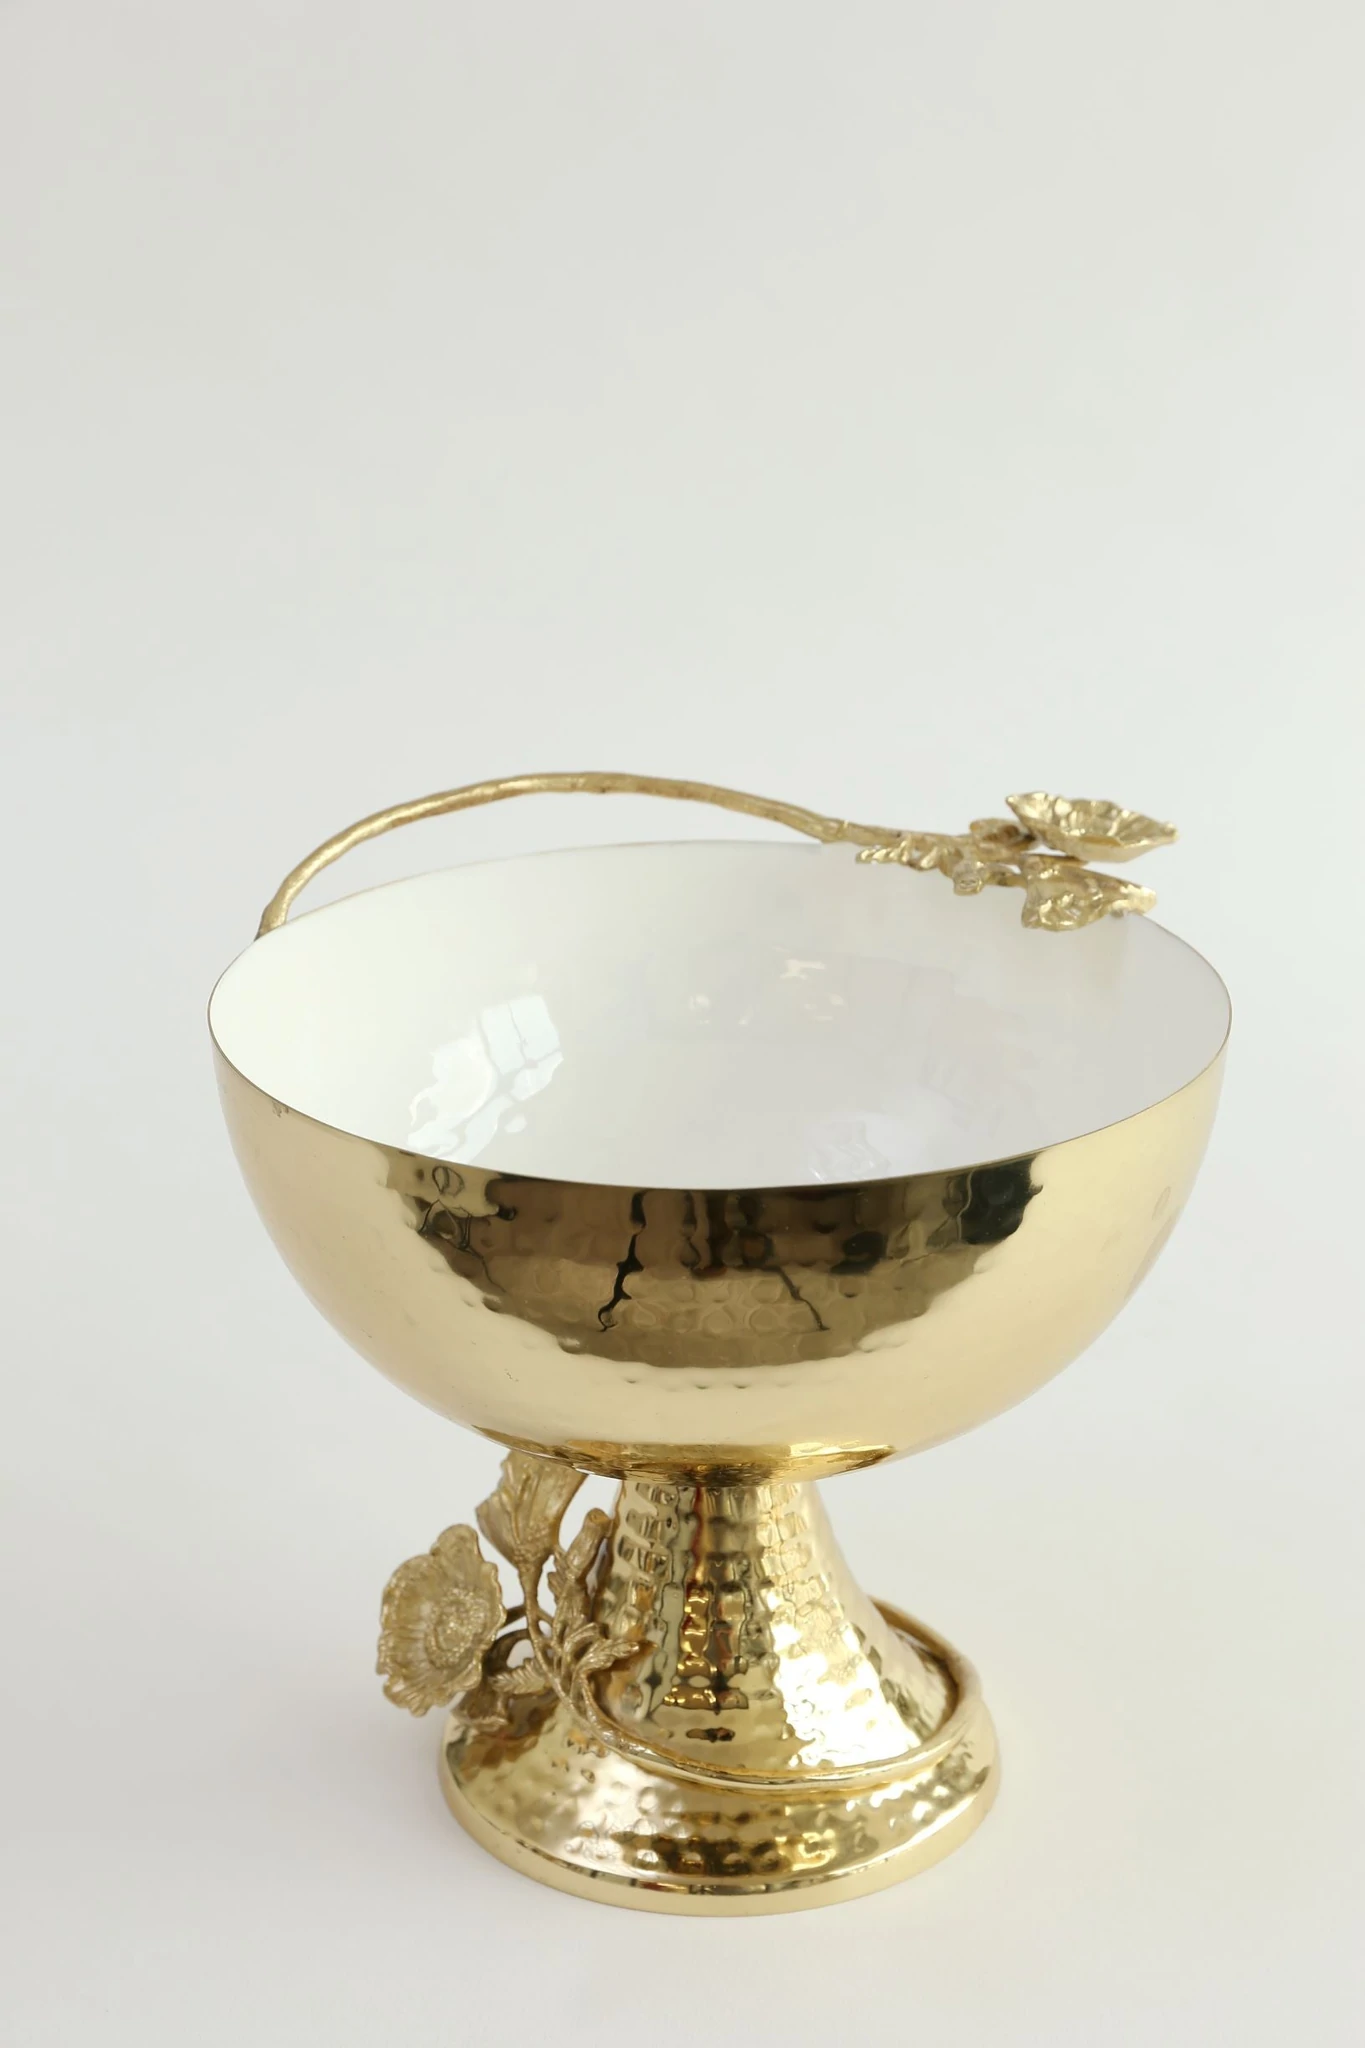 Gold Bowl pedestal with flower design